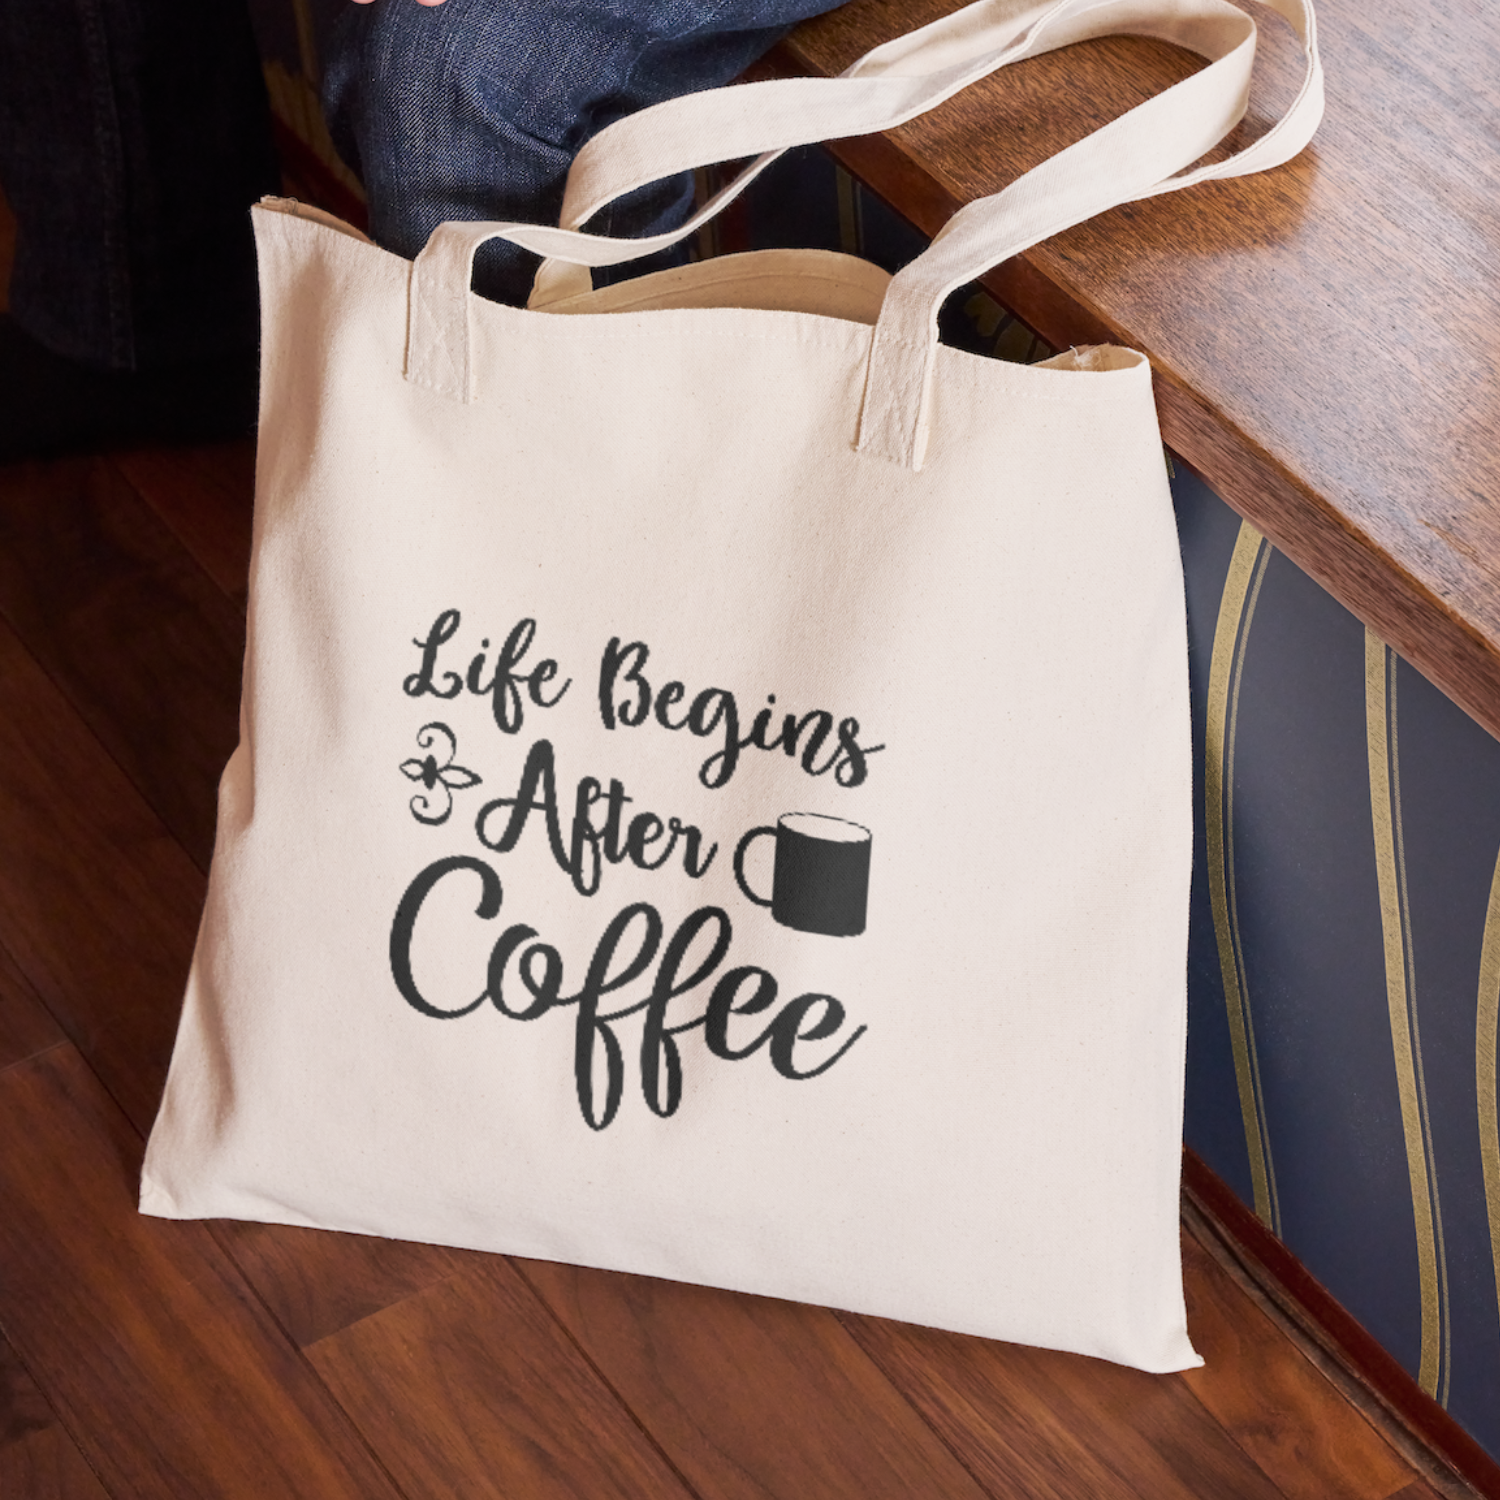 After Life Begins Coffee 1 SVG | Digital Download | Cut File | SVG